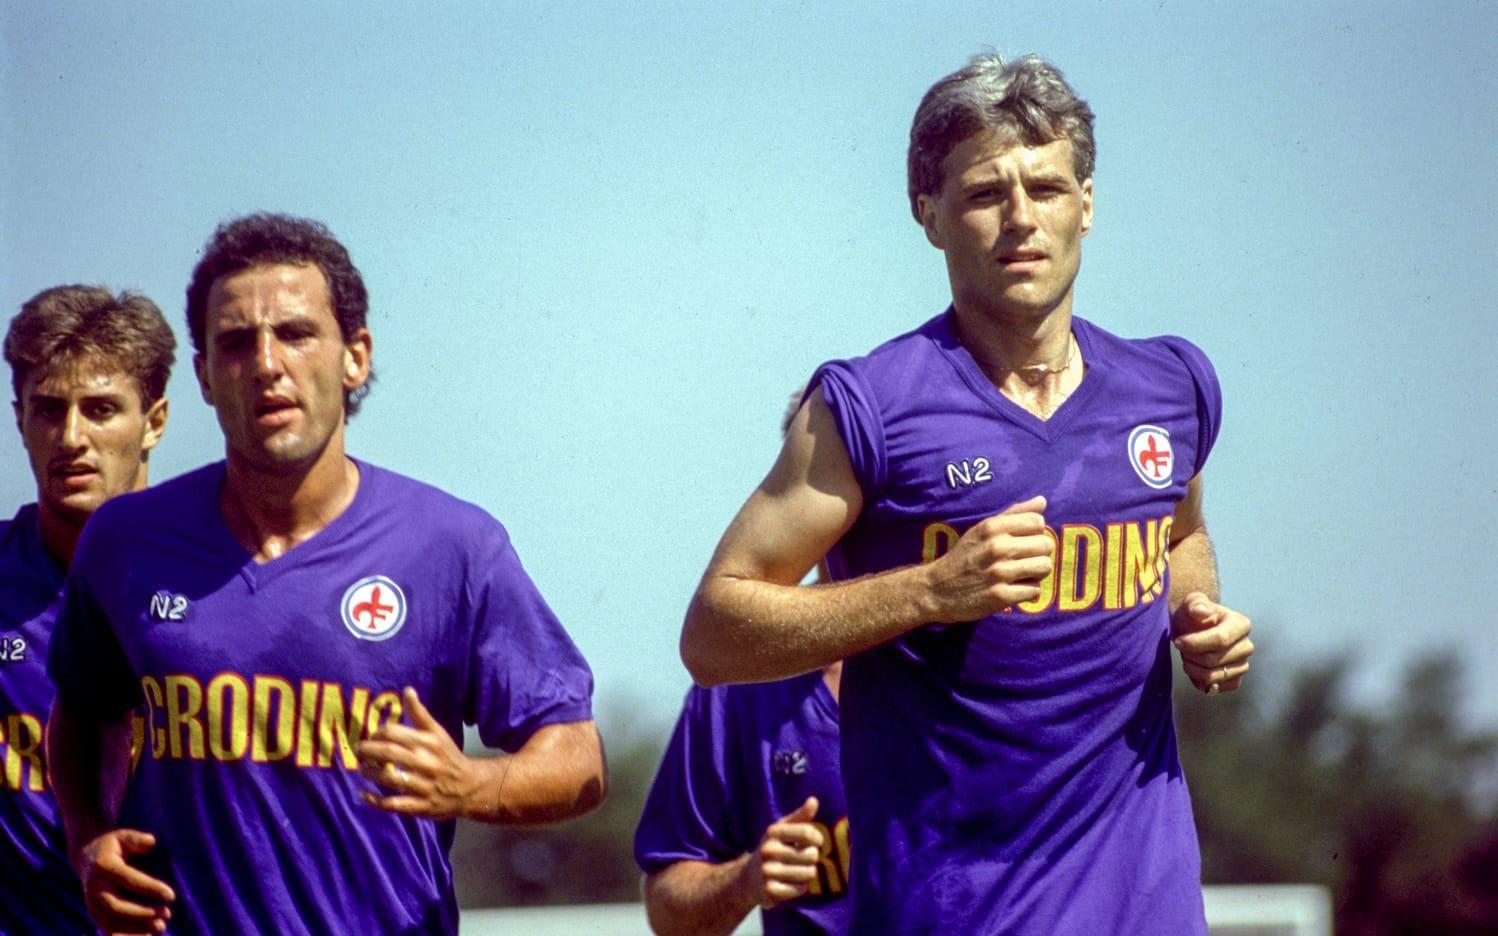 27. Hysén gjorde två säsonger i Fiorentina 1987-1989. Foto: TT